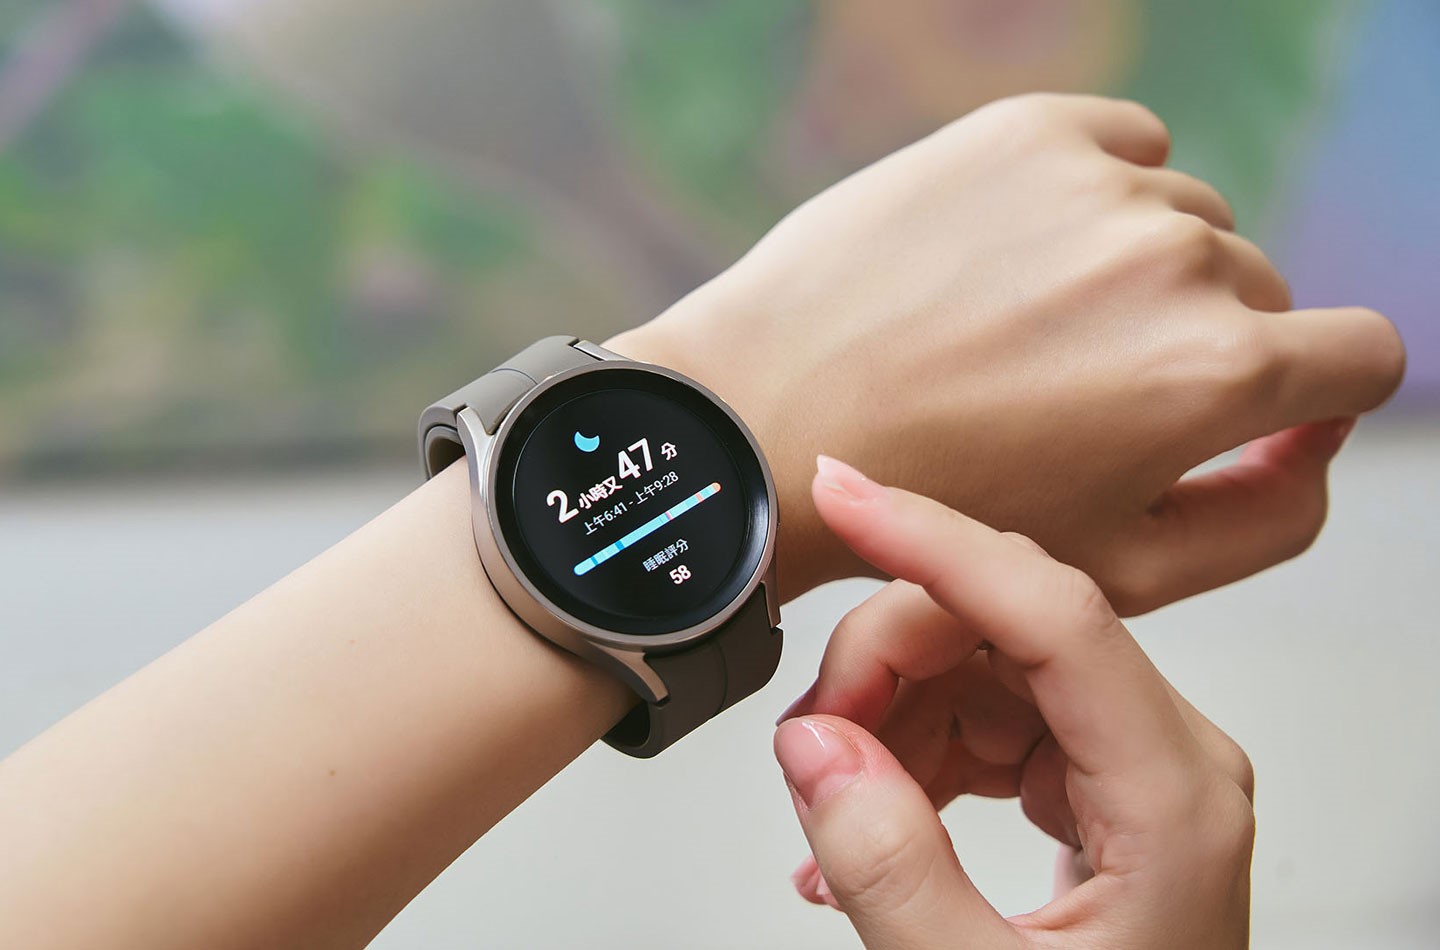 現代人因壓力大、工時長，容易出現睡眠品質不佳的情況，經常一覺醒來覺得還沒睡飽，但卻不了解睡眠究竟出了什麼問題，這時，非常建�利用 Galaxy Watch5 Pro 的睡眠偵測功能來收集睡眠時長、深眠與淺眠的時間…�相關資訊，並為每一次睡眠進行量化評分，作為改善睡眠狀態的依據。